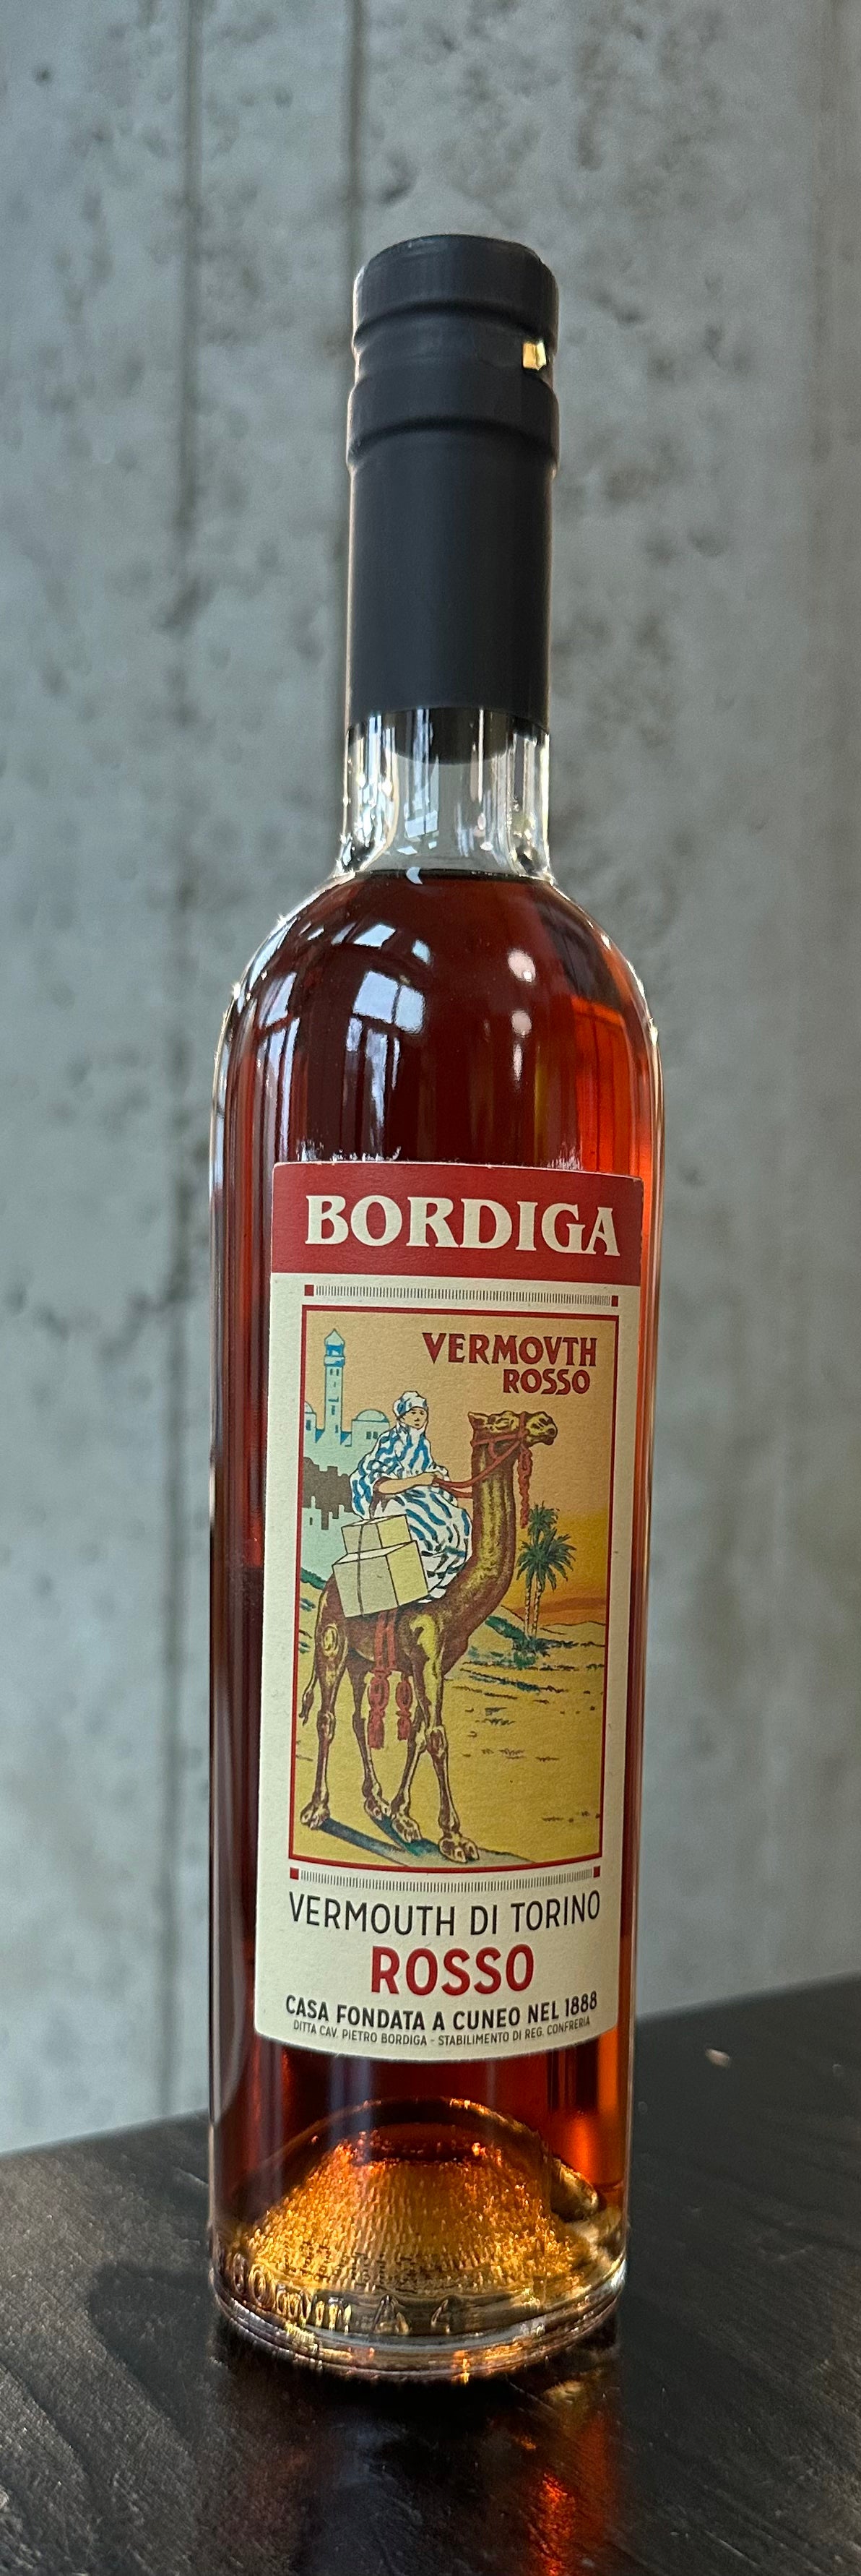 Bordiga Vermouth di Torino Rosso (375ml)